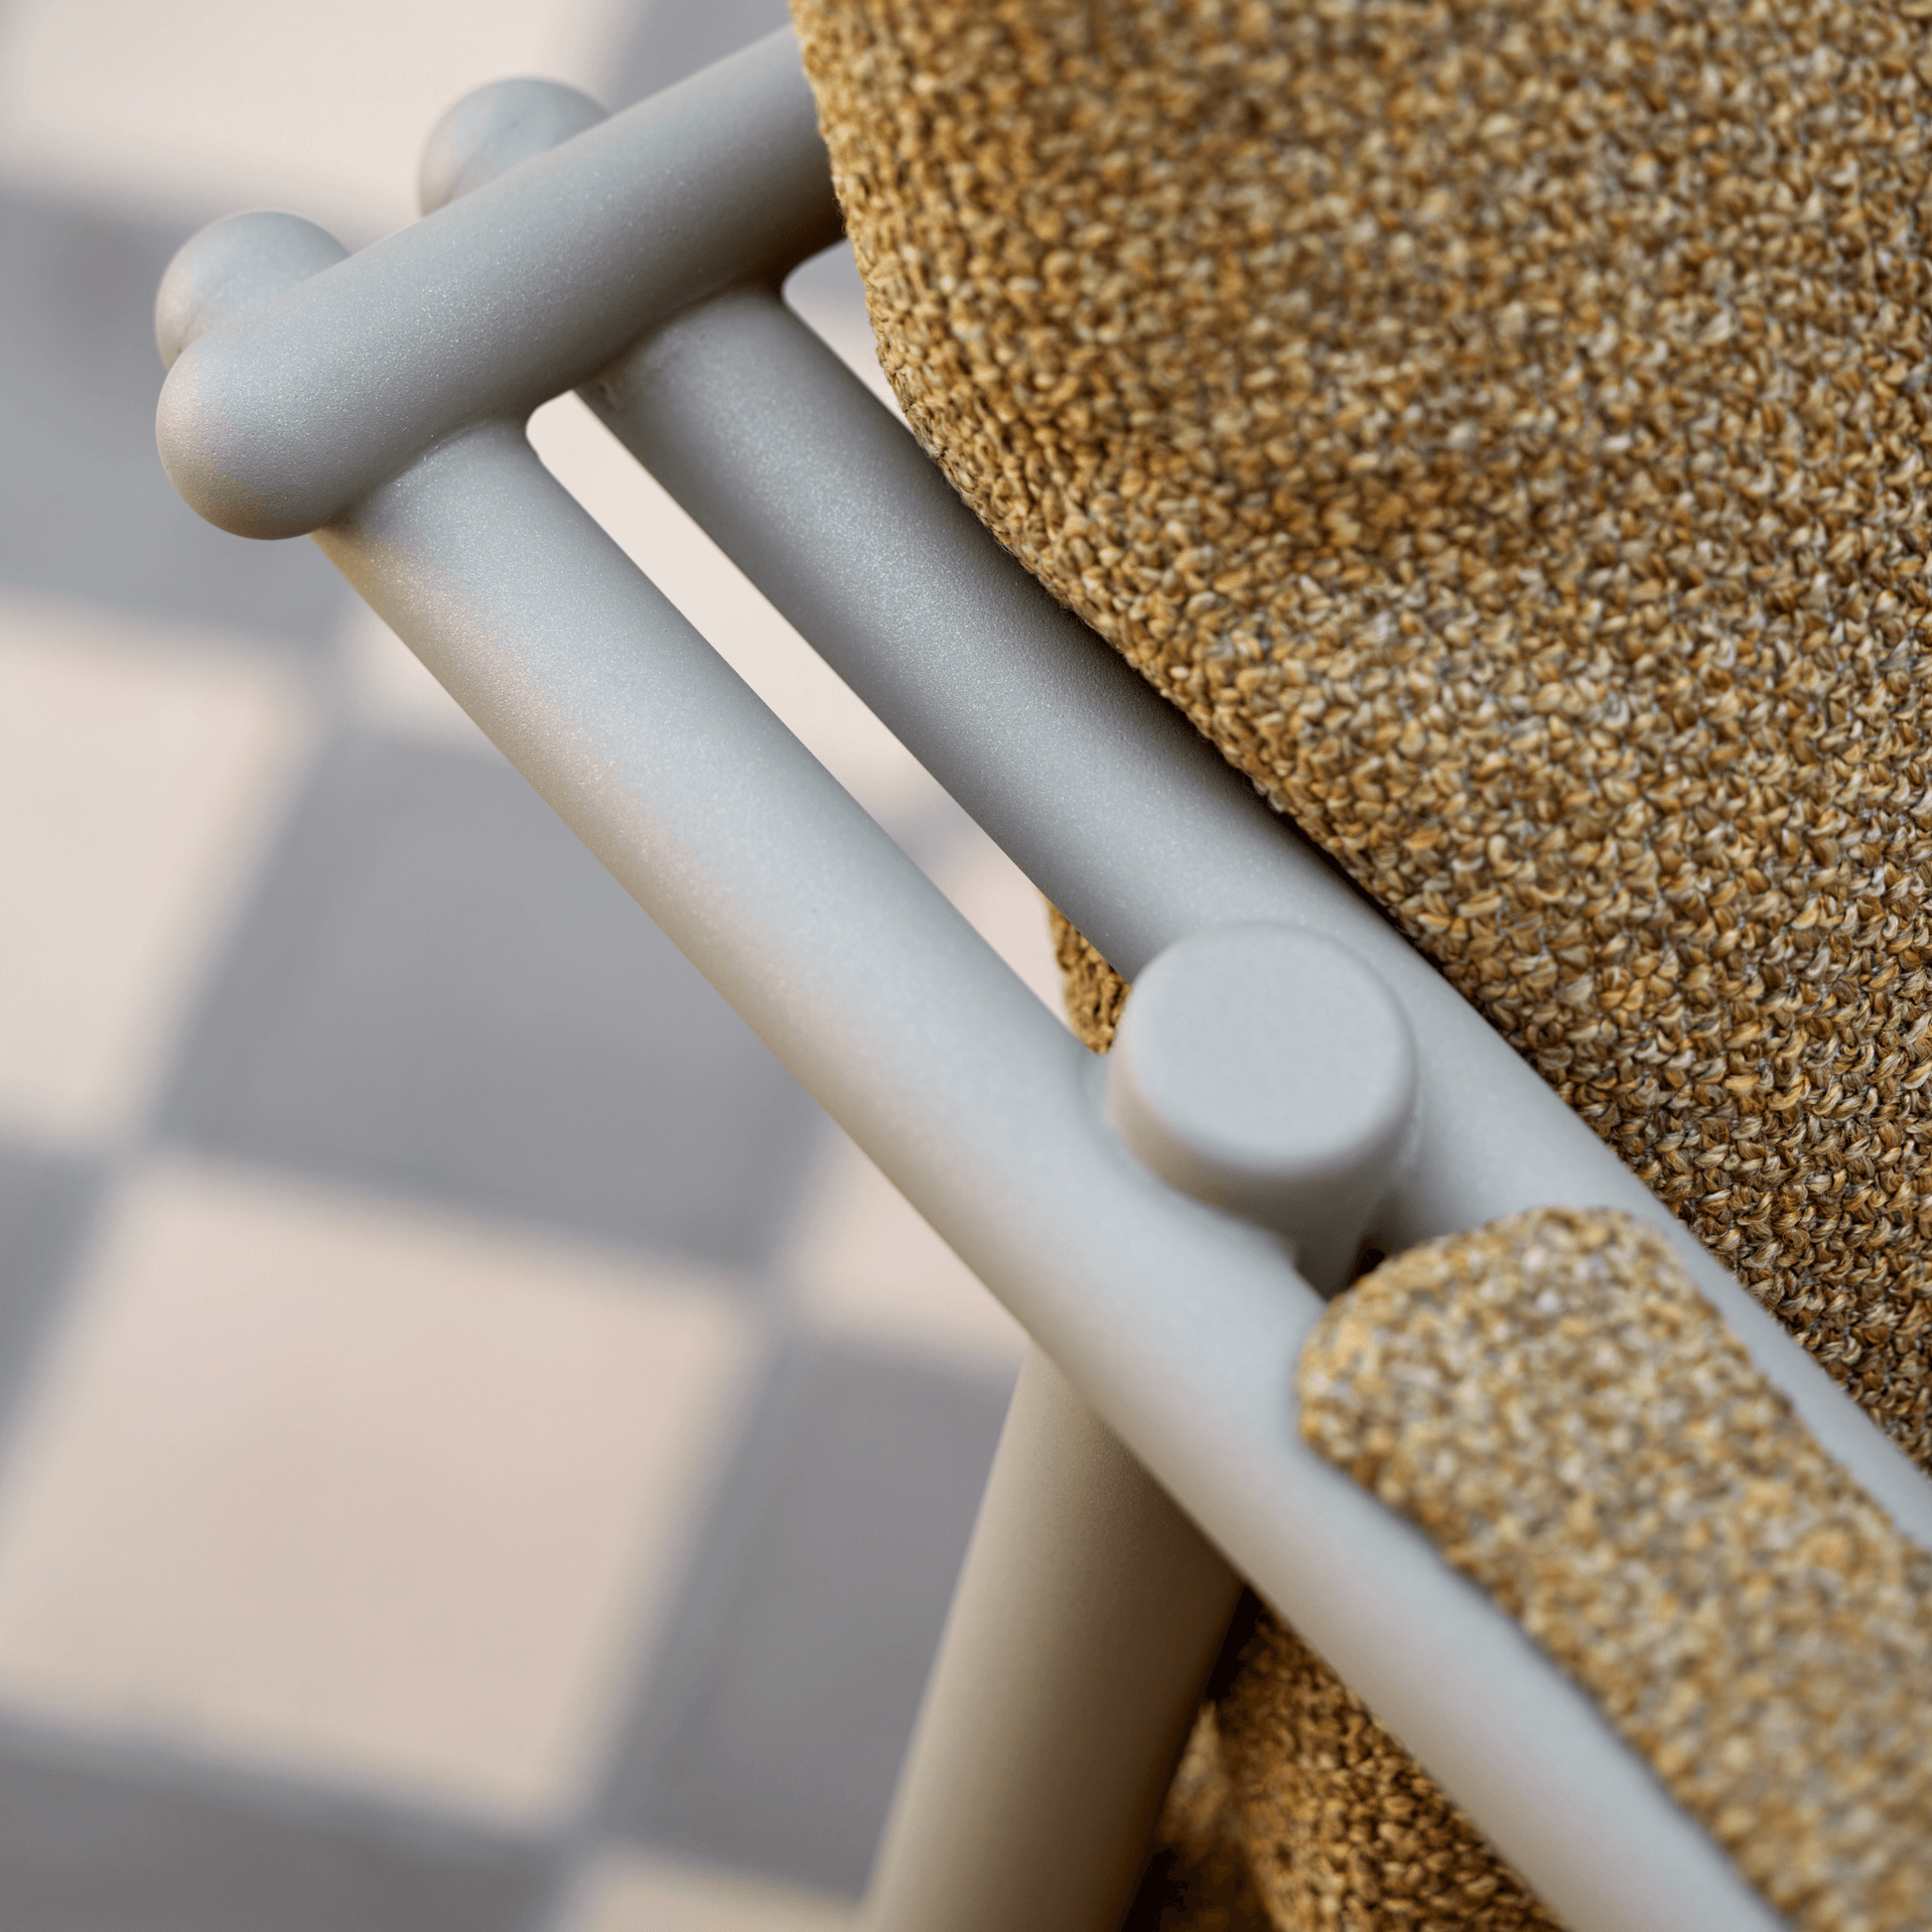 Cane-Line Sticks 2-Seater Sofa - Garden House Design